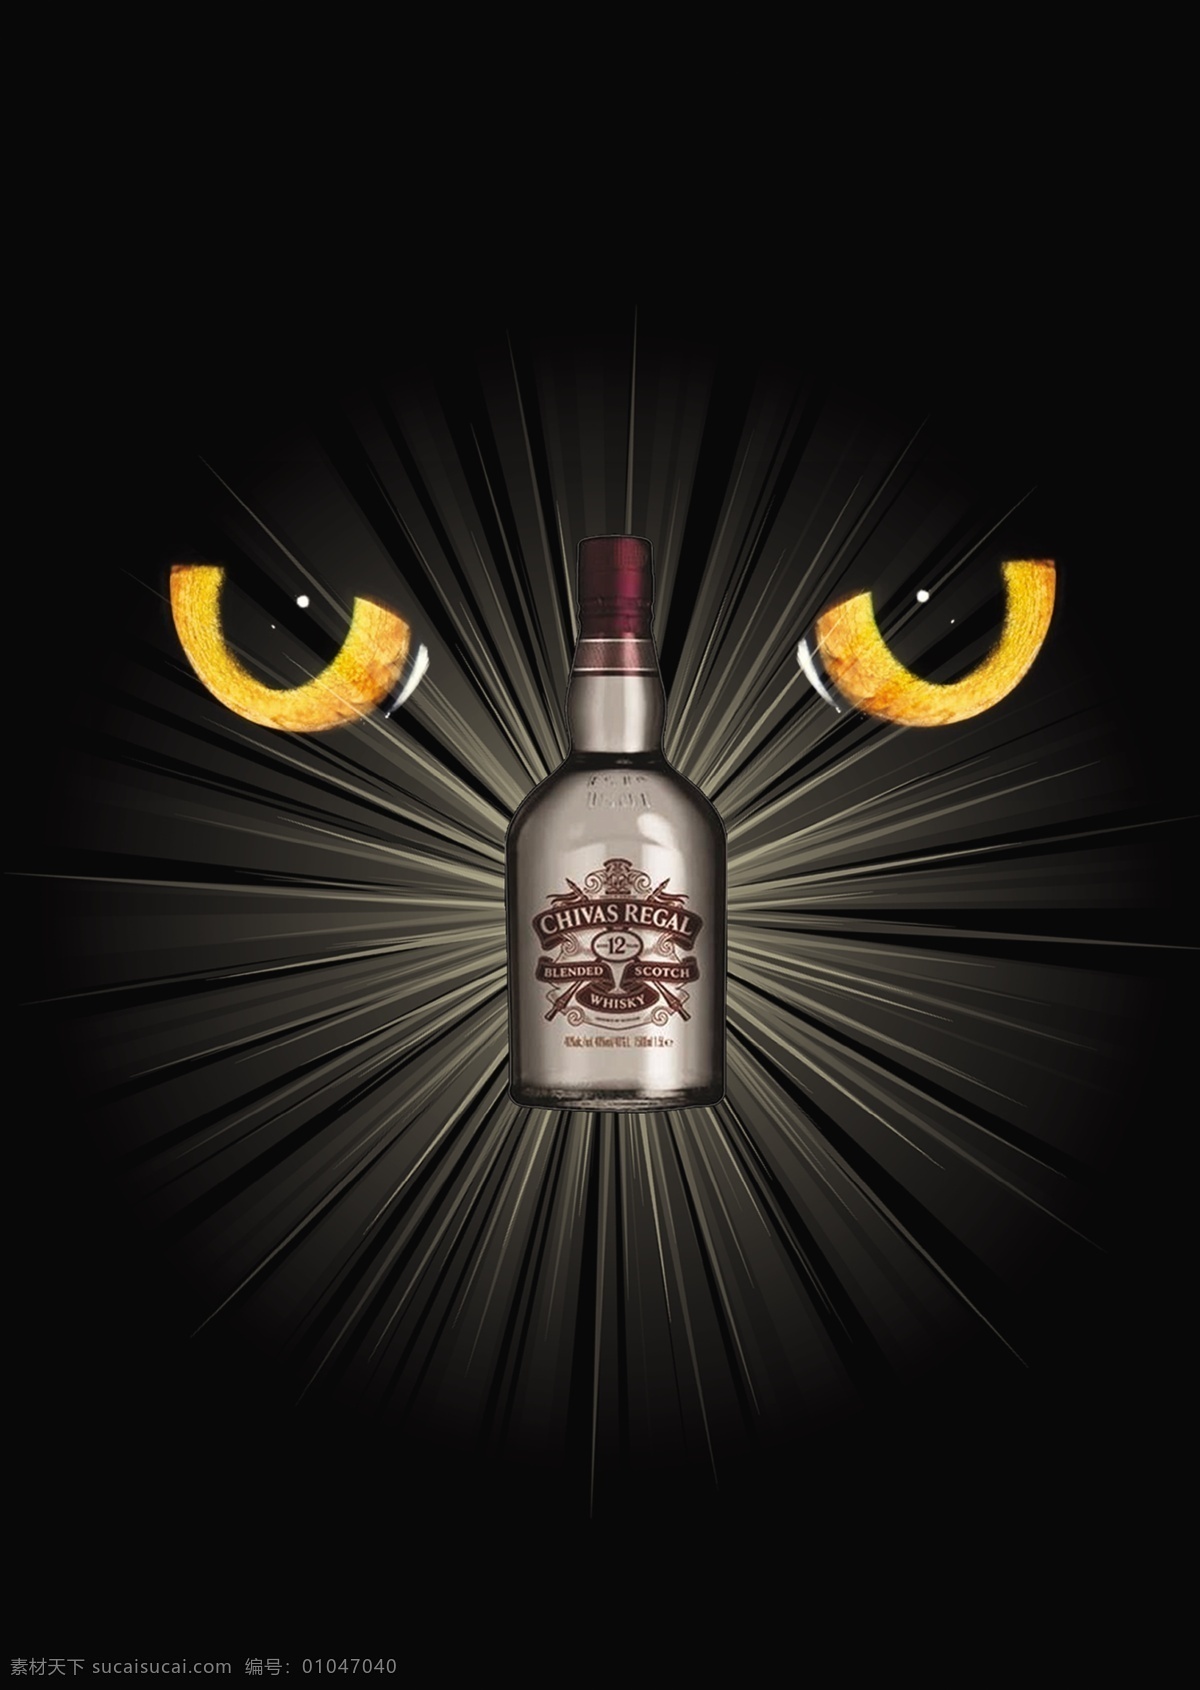 芝华士海报 芝华士 猫眼 酒瓶 奢华 尊贵 炫丽背景 洋酒 法国 广告设计模板 源文件